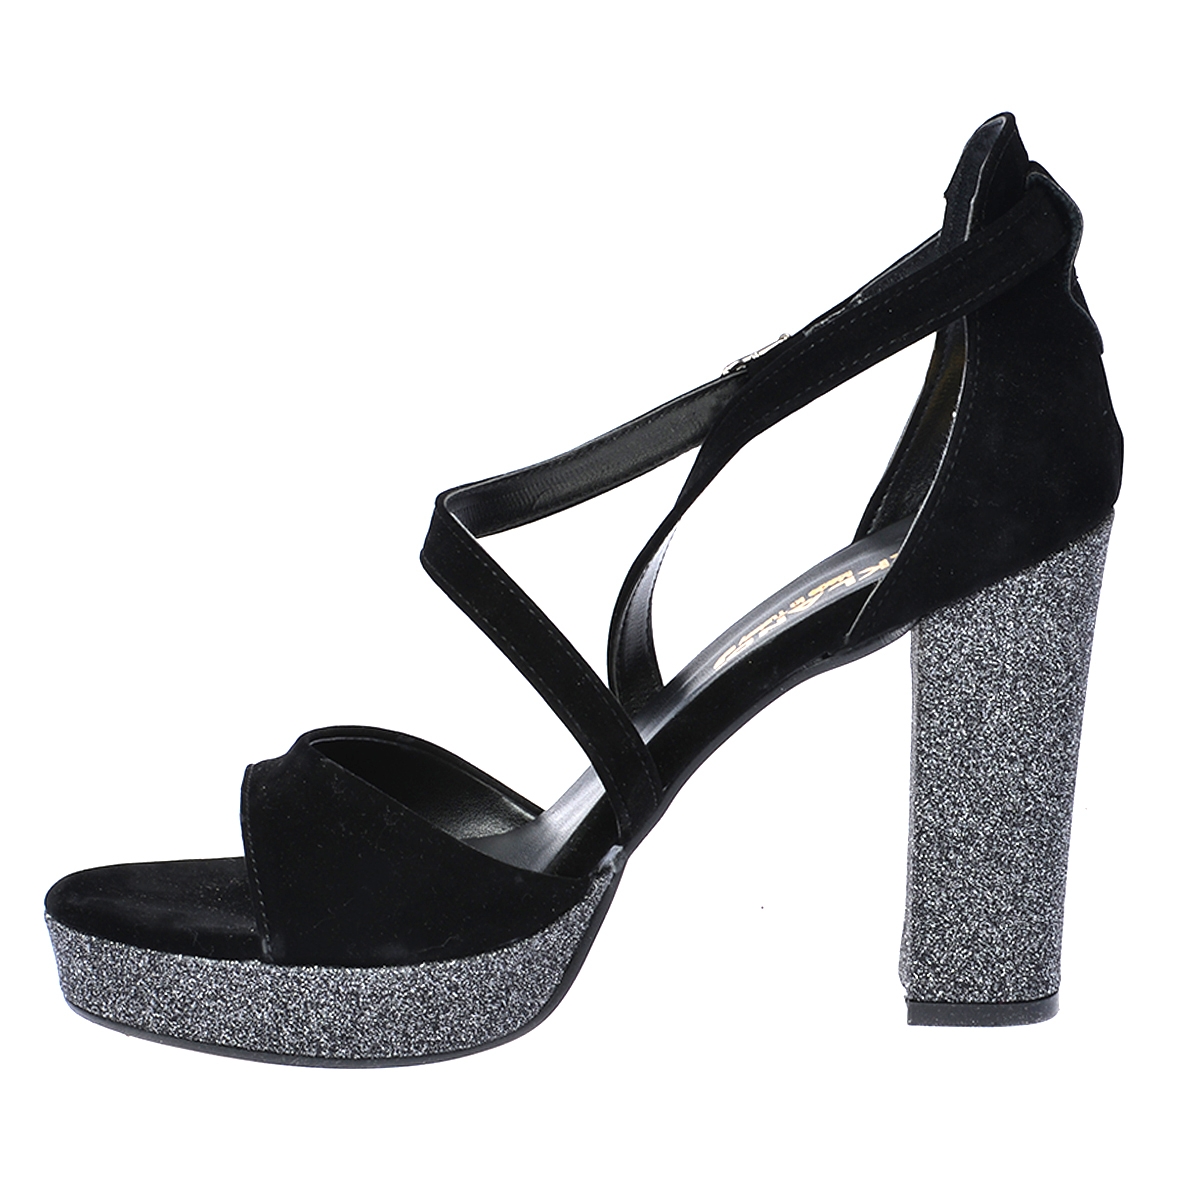 Flo 3210-2068 Simli Abiye 11 Cm Platform Topuk Bayan Sandalet Ayakkabı Siyah. 5